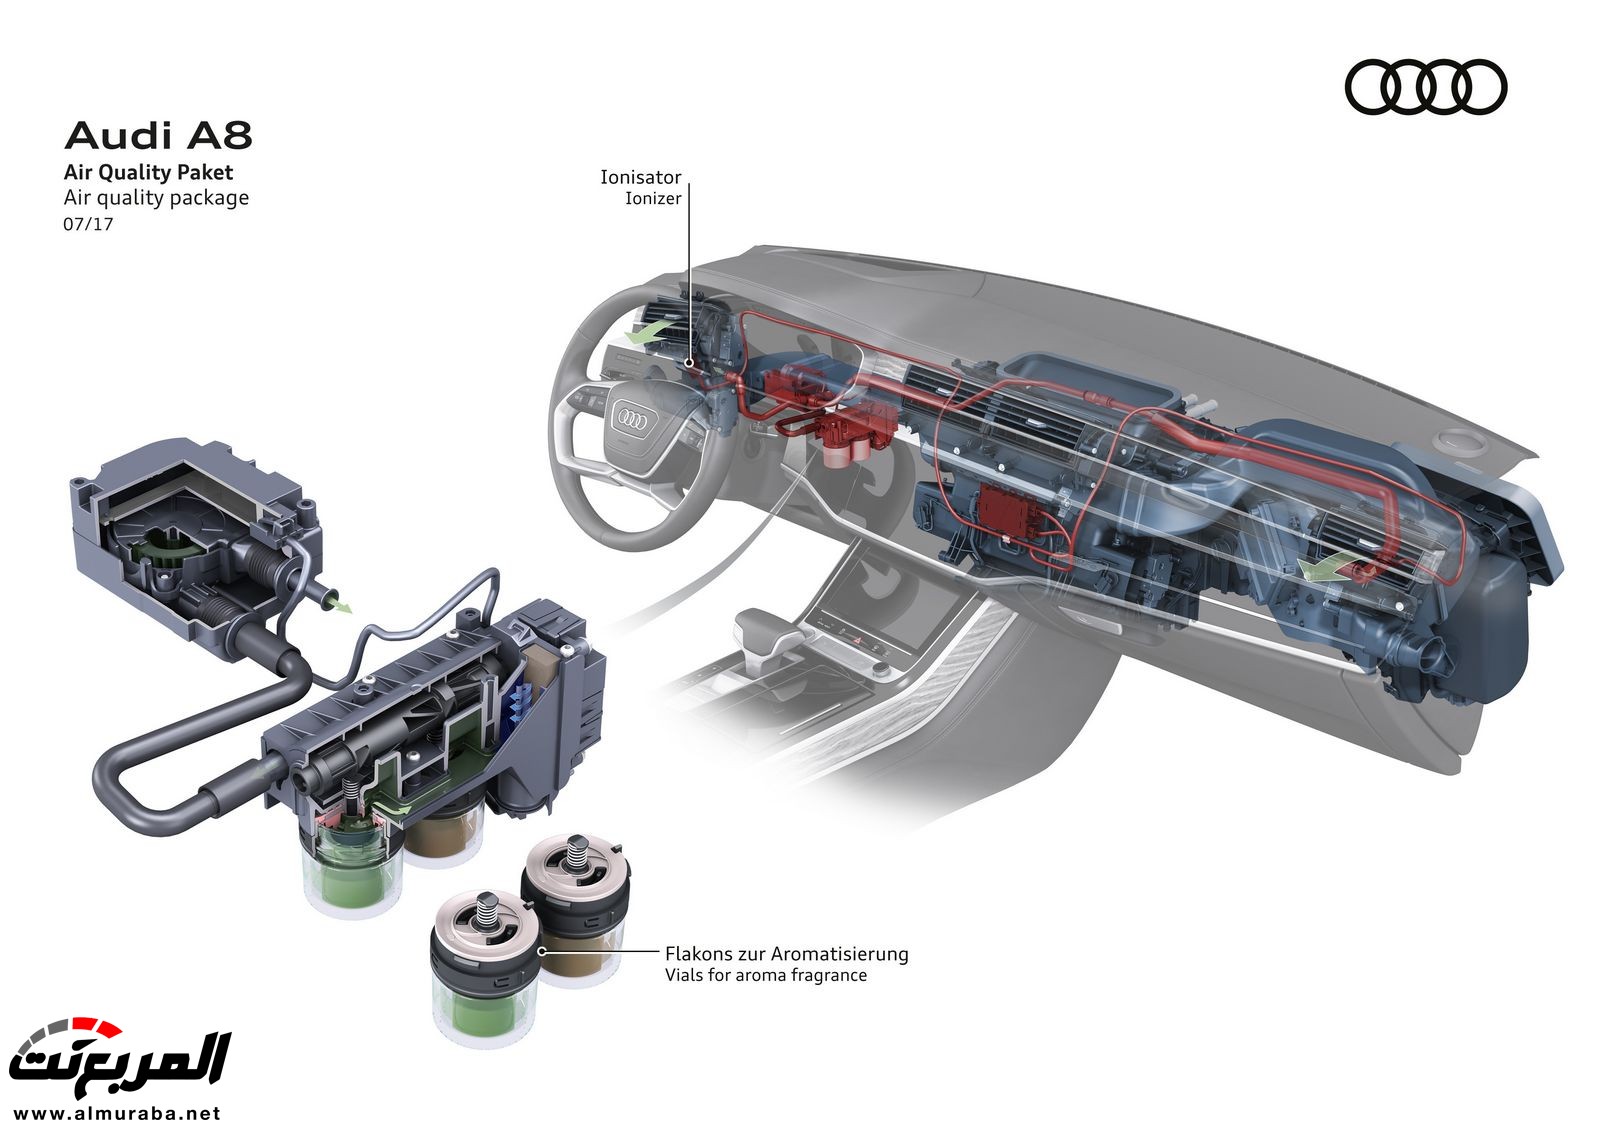 أودي A8 2018 الجديدة كلياً تكشف نفسها بتصميم وتقنيات متطورة "معلومات + 100 صورة" Audi A8 97